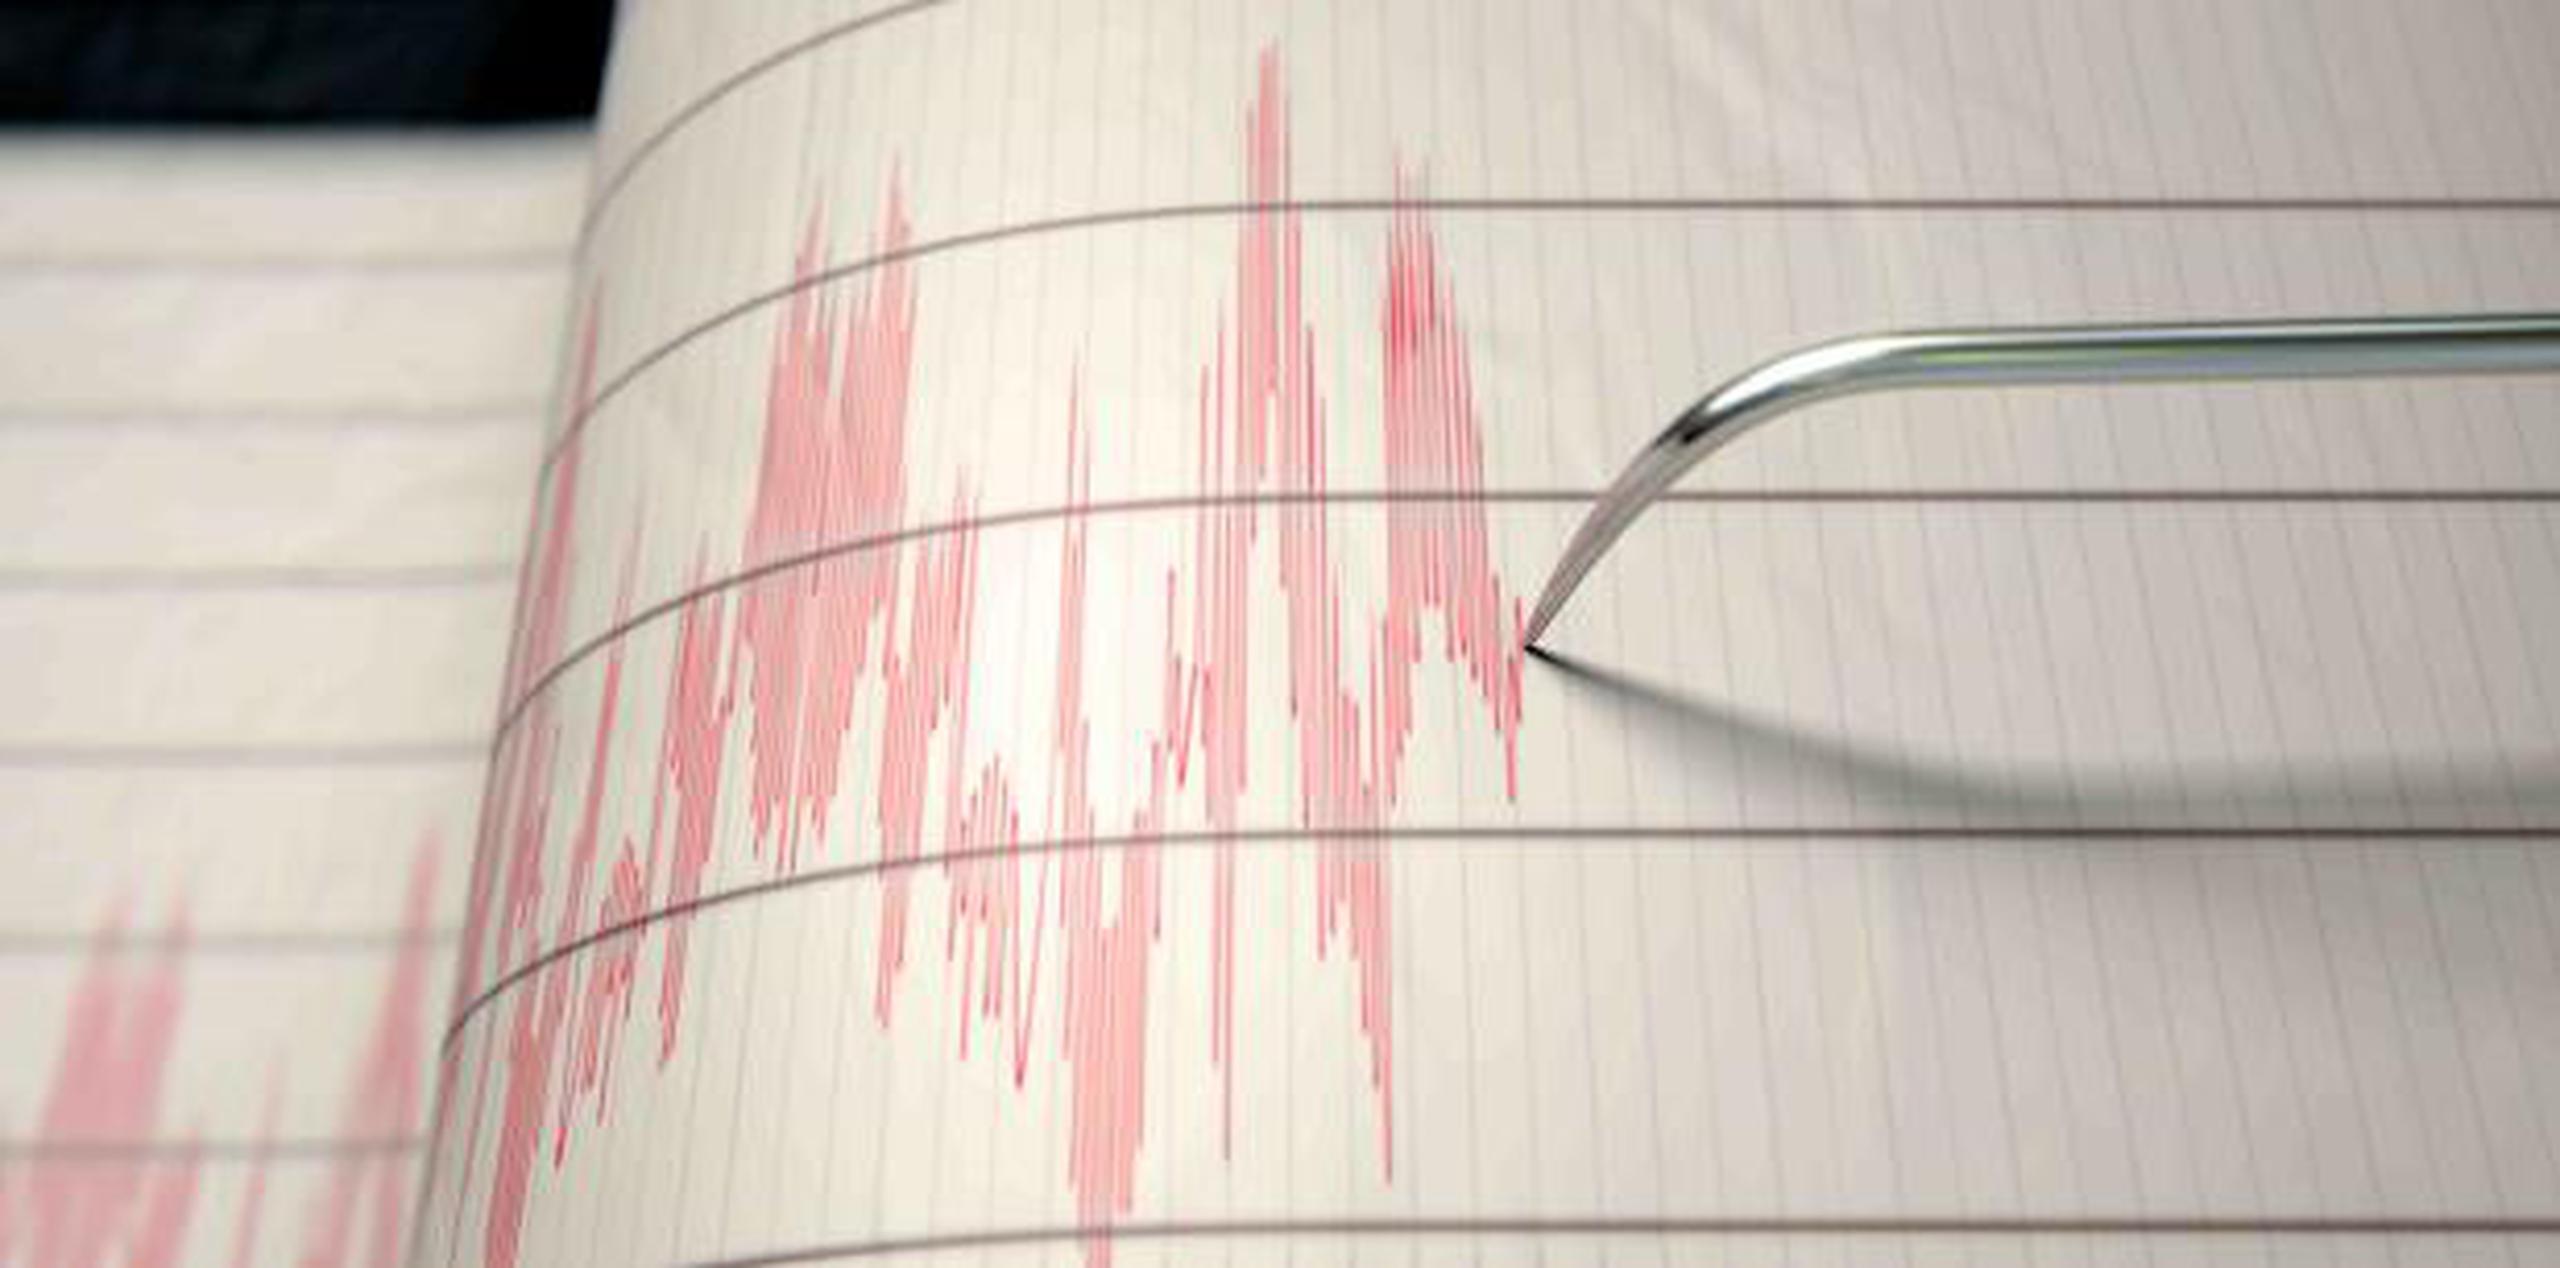 Las profundidades de los temblores variaron entre 2 a 167 kilómetros. (Shutterstock)